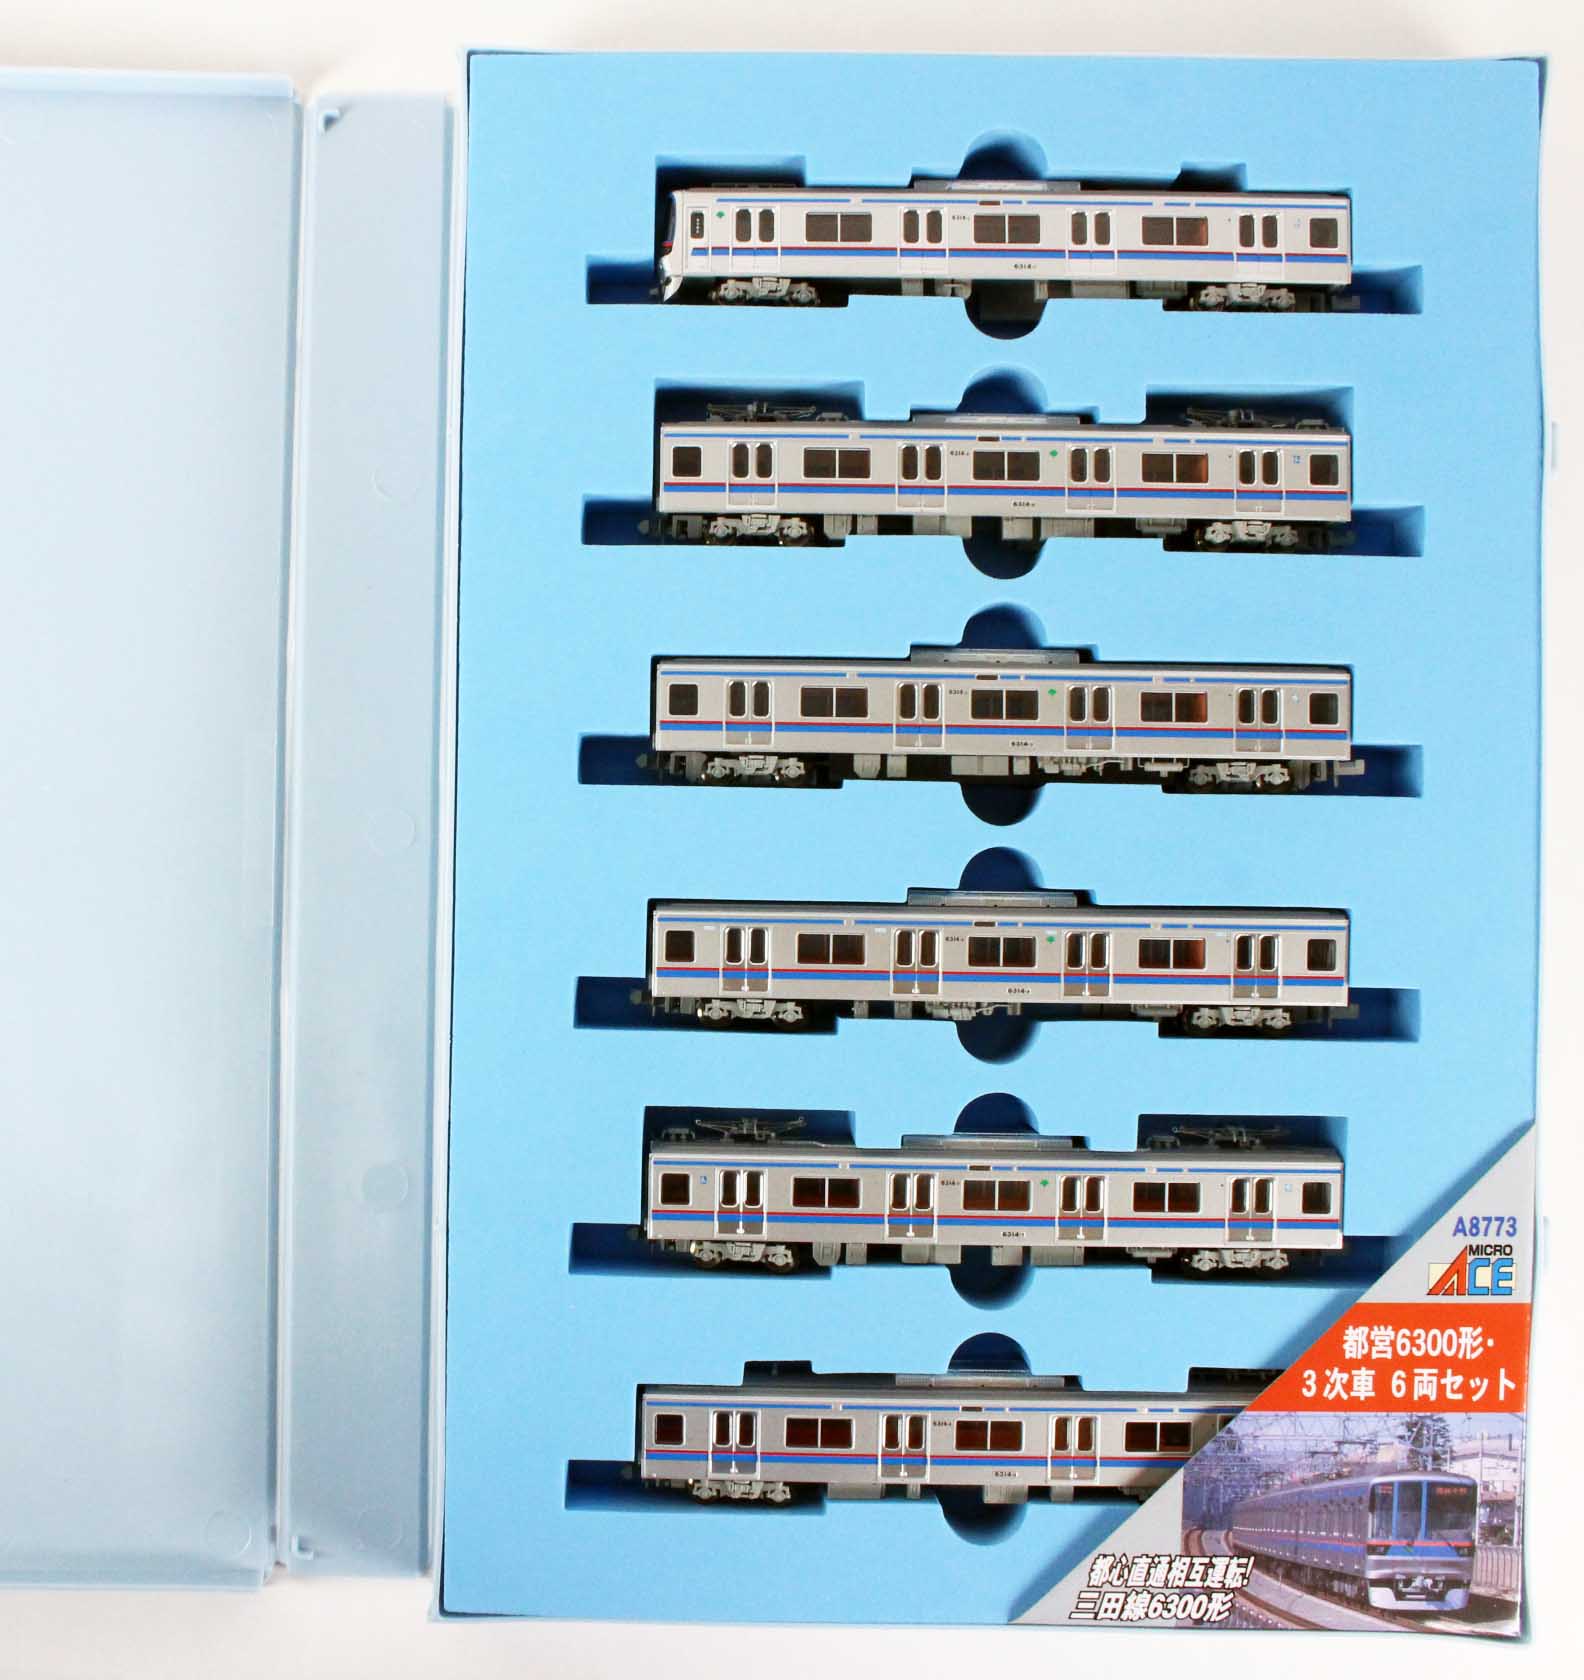 マイクロエース A8773 都営6300形・3次車 6両セット 鉄道模型 Nゲージ  鉄道模型・プラモデル・ラジコン・ガン・ミリタリー・フィギュア・ミニカー 玩具(おもちゃ) の通販サイト